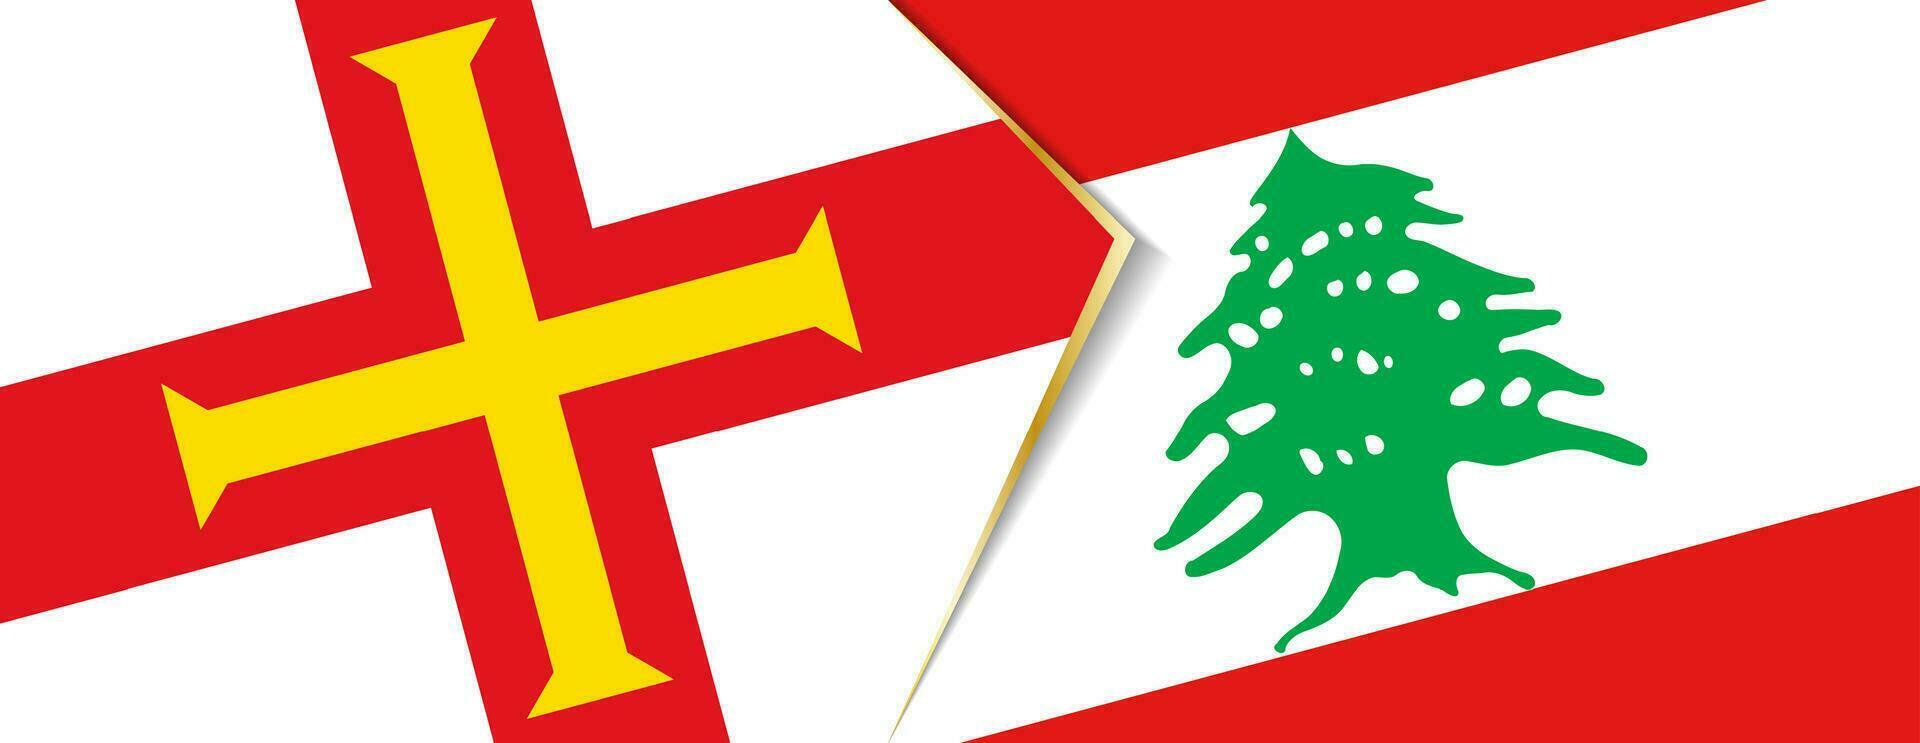 guernsey och libanon flaggor, två vektor flaggor.